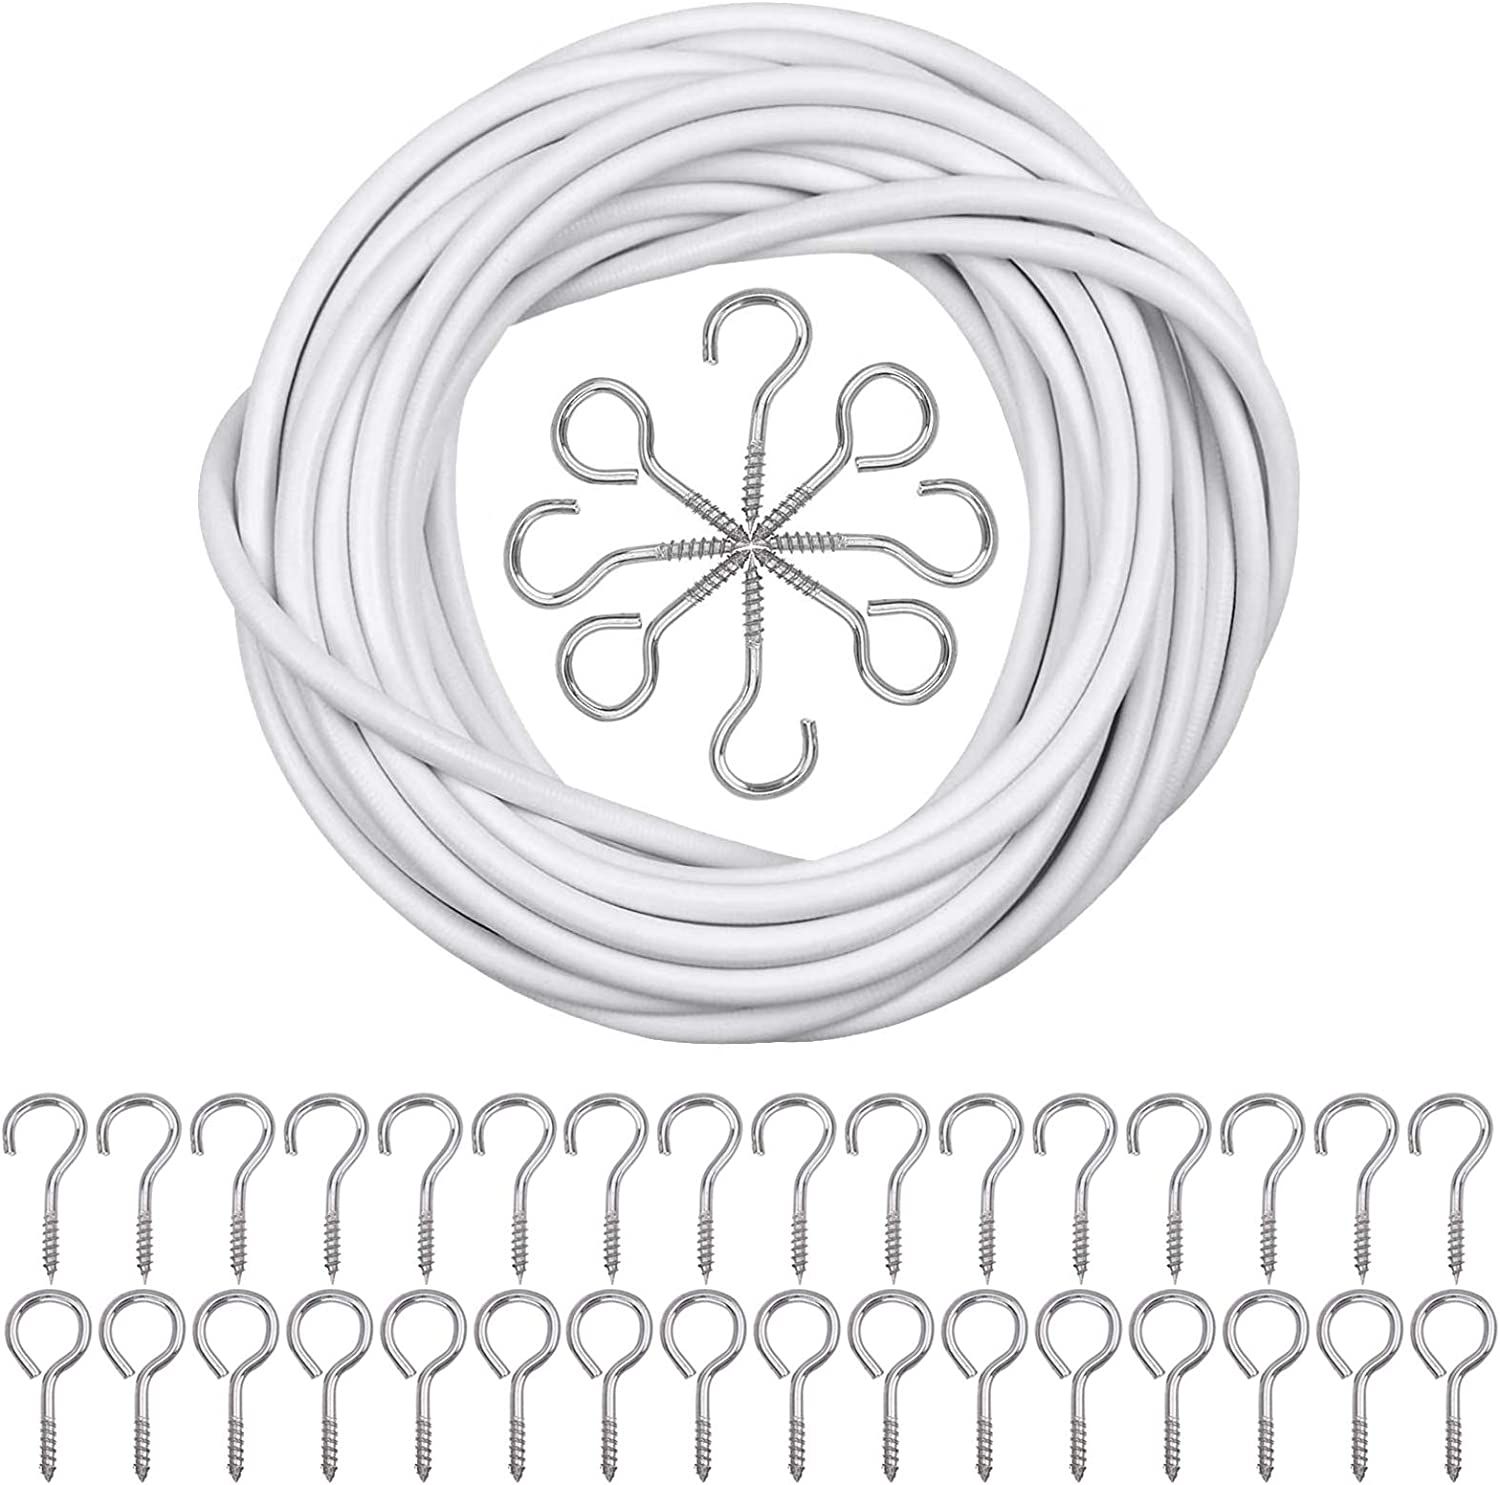 Cable pour rideaux